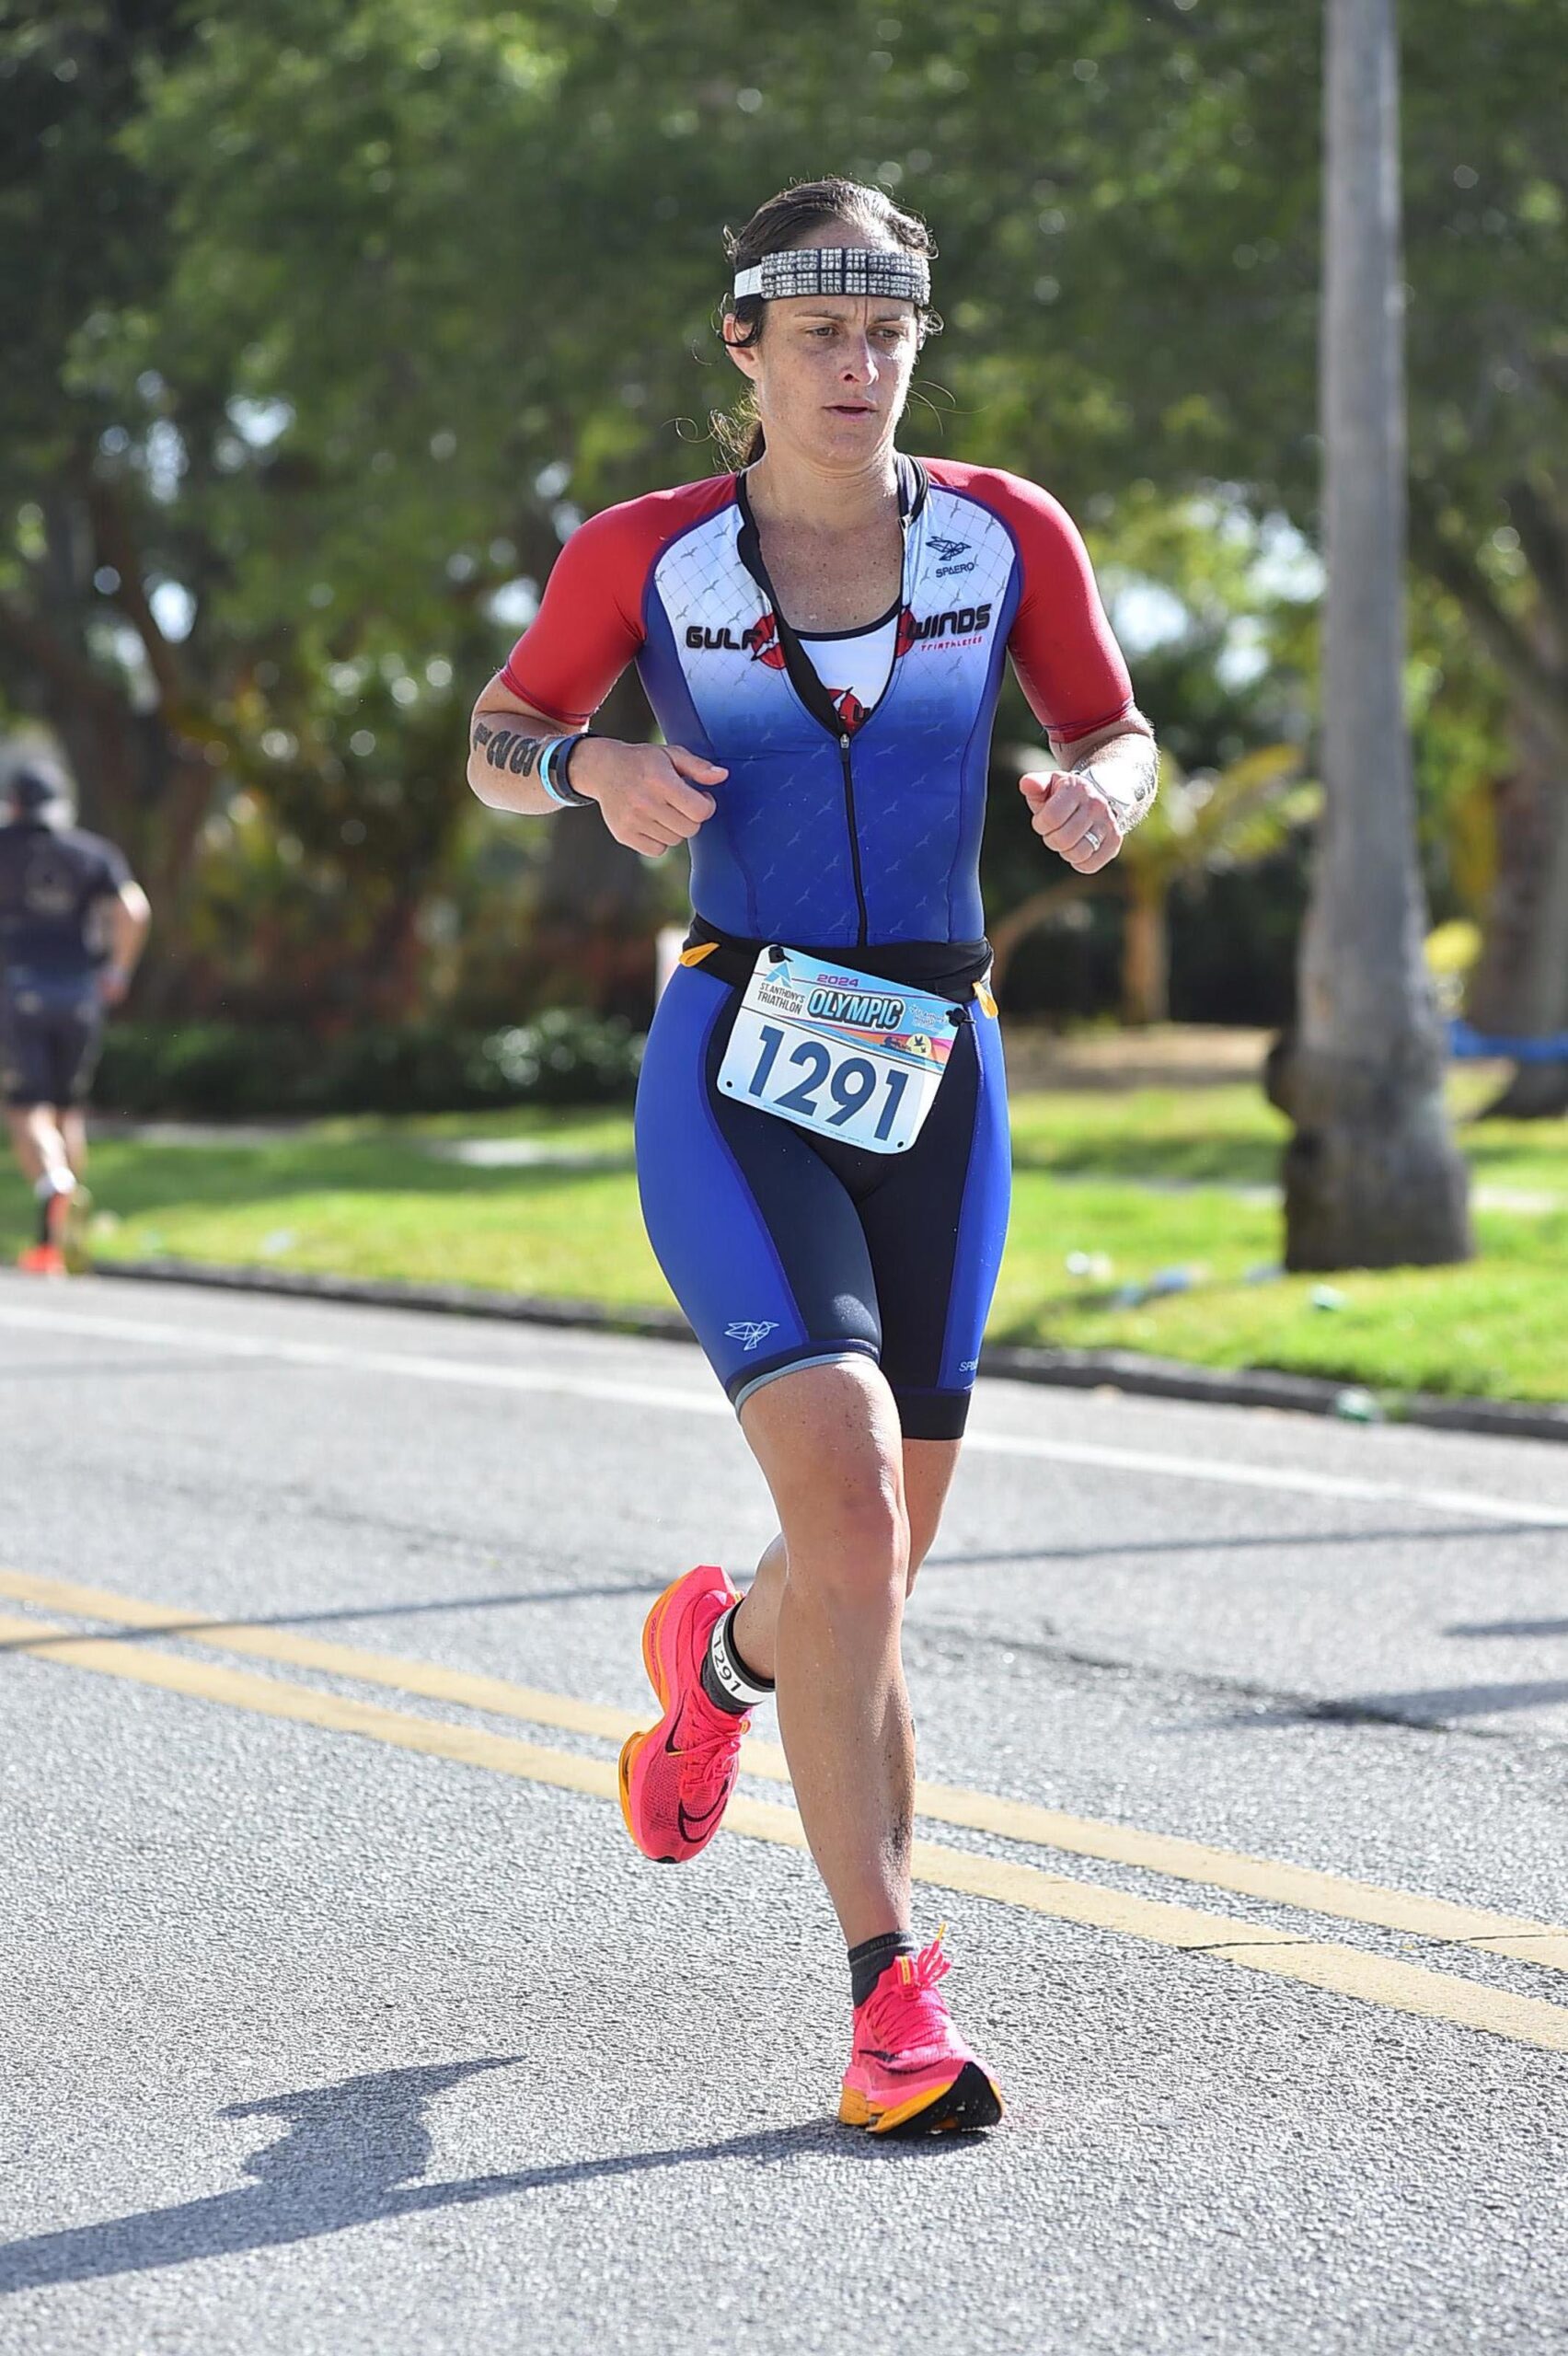 A woman running in a triathlon.